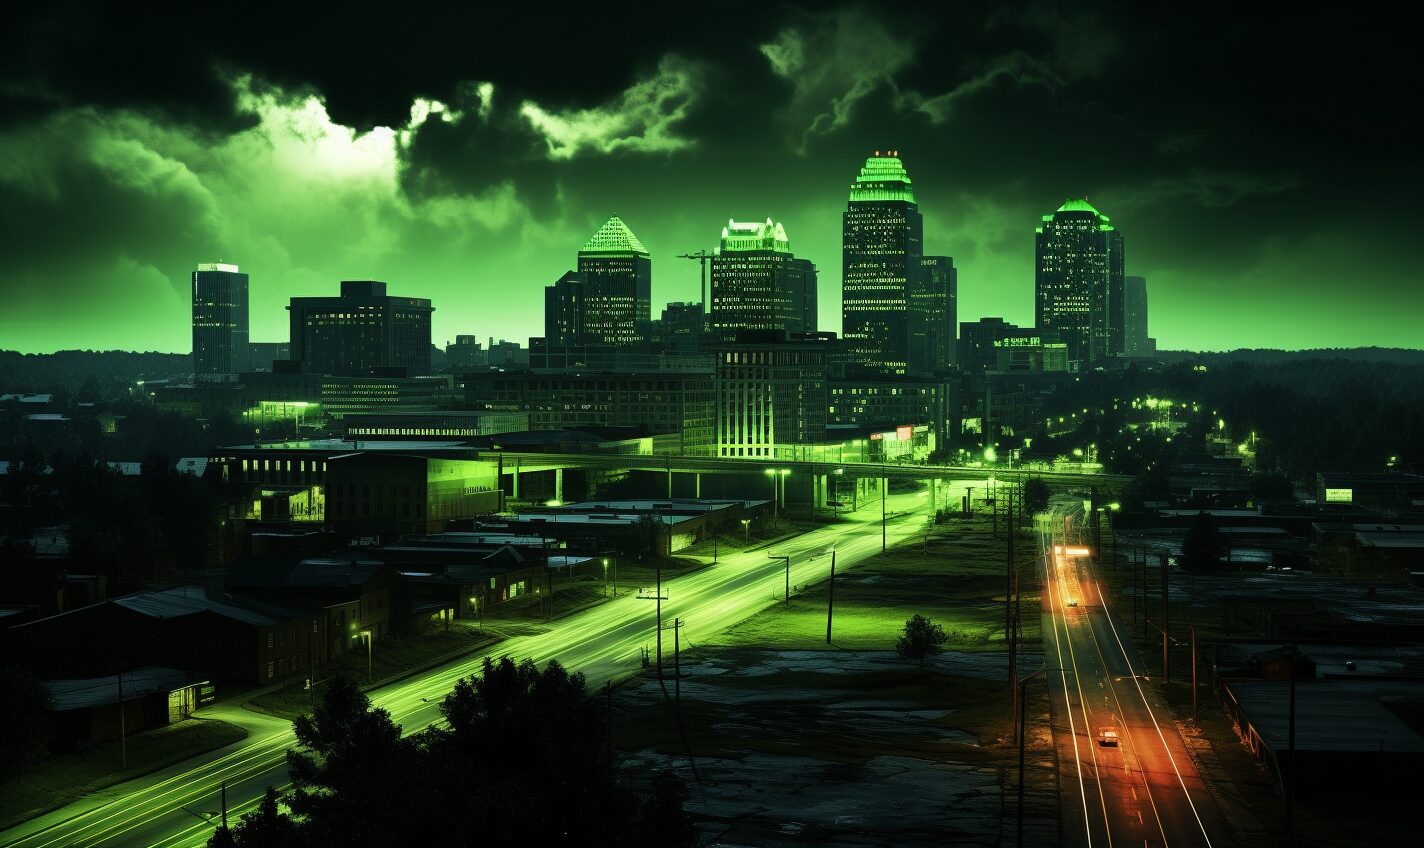 tuscaloosa, alabama in a black and neon green glow